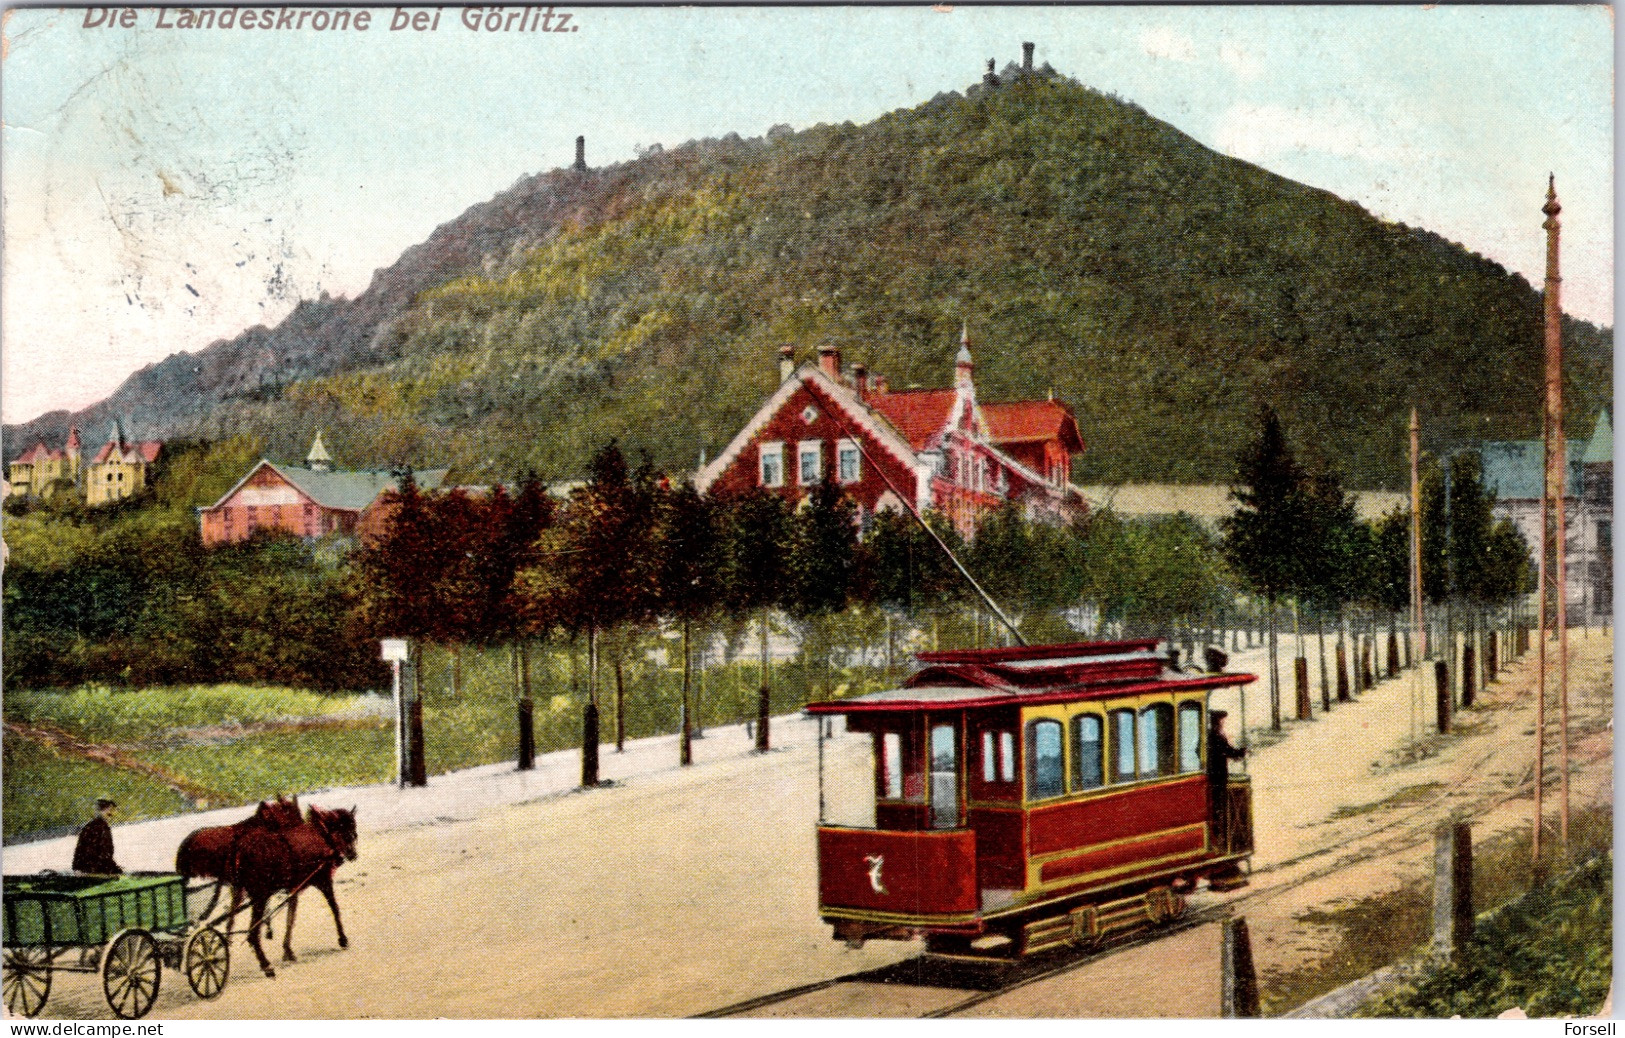 Die Landeskrone Bei Görlitz (Strassenbahn) (Stempel: Kleinbiesnitz 1910) - Goerlitz